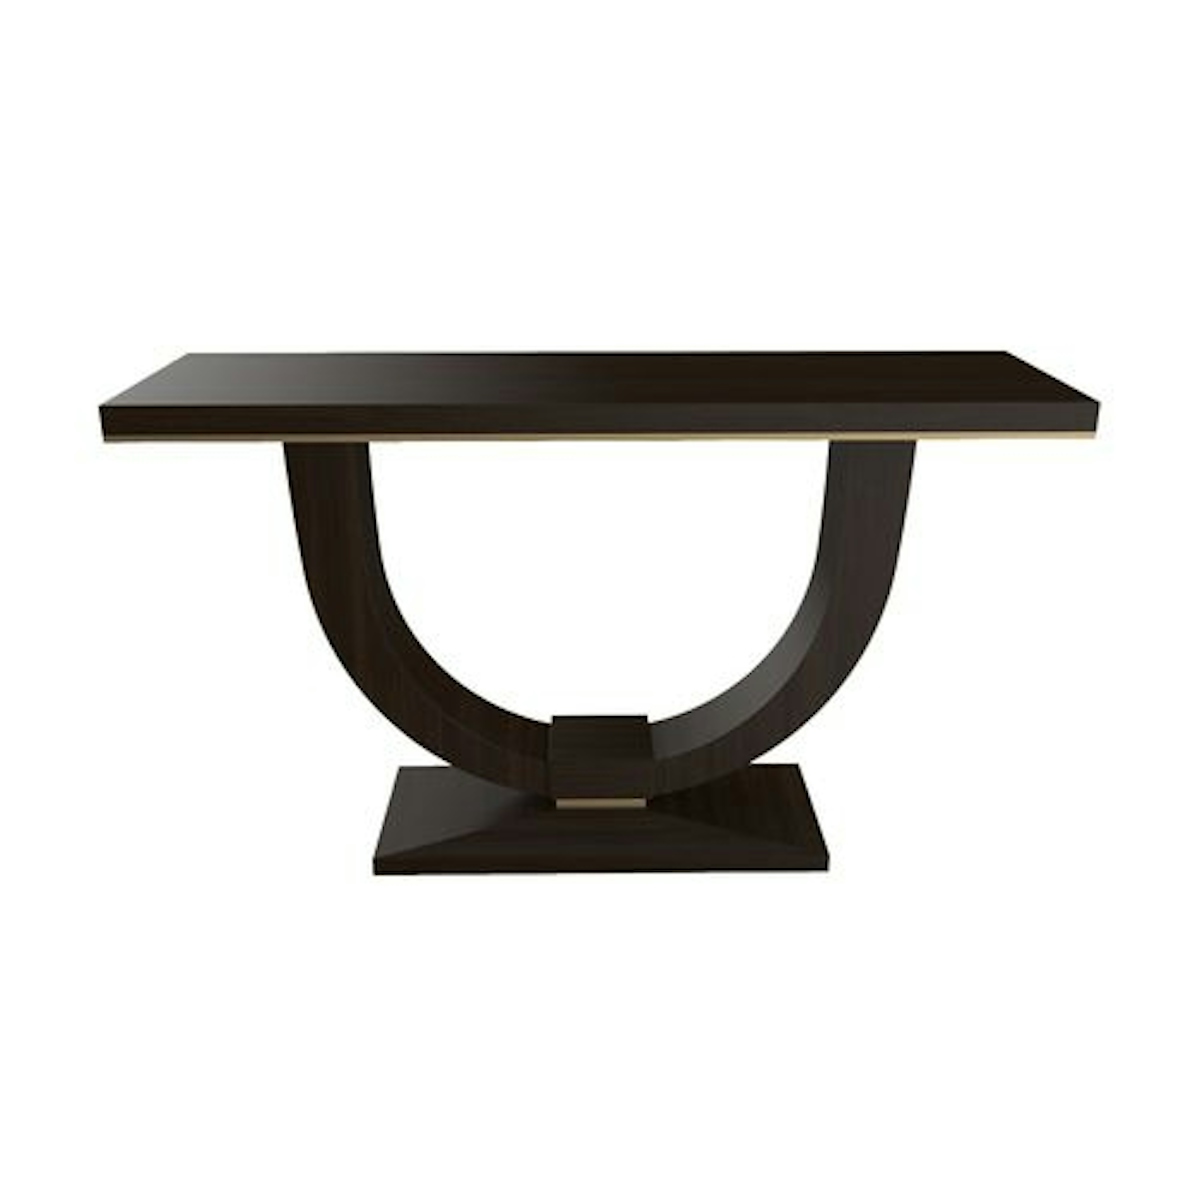 Art Deco console table design | Shop console tables online at LuxDeco.com